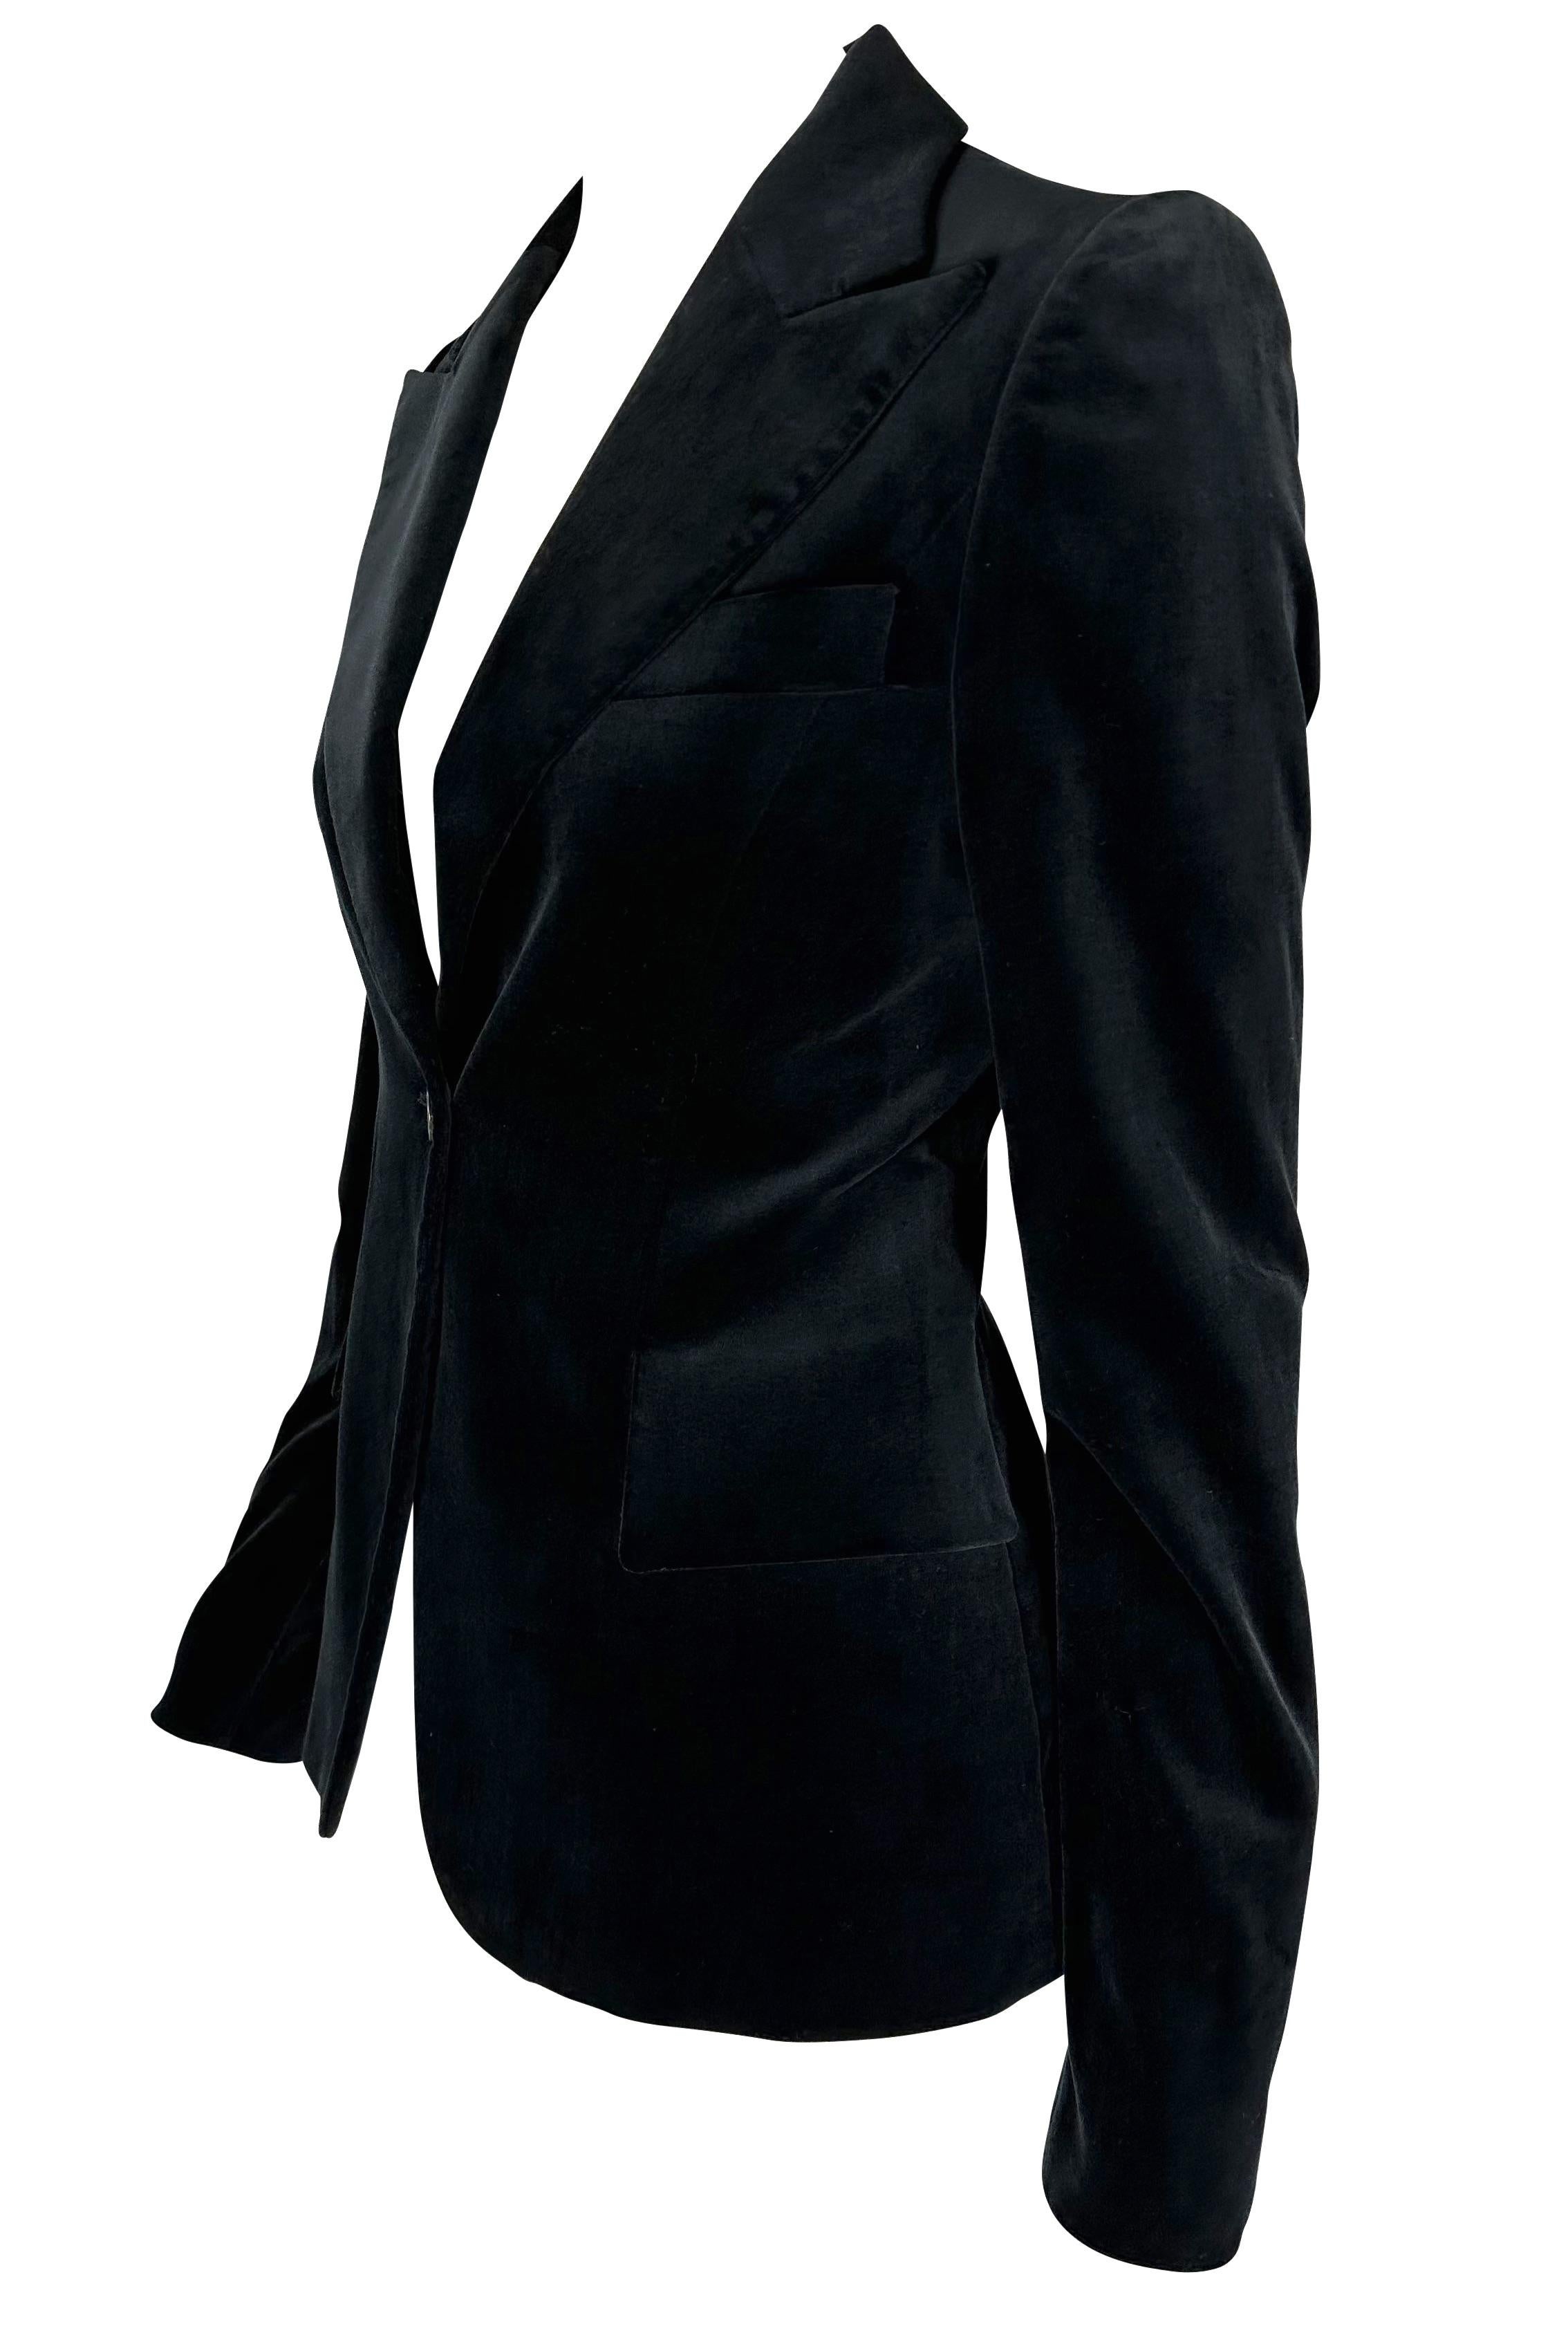 Présentation d'un magnifique blazer noir en velours Gucci, dessiné par Tom Ford. Issue de la collection Automne/Hiver 2003, cette fabuleuse veste en velours se ferme par un seul bouton sur le devant et constitue le complément chic idéal de toute